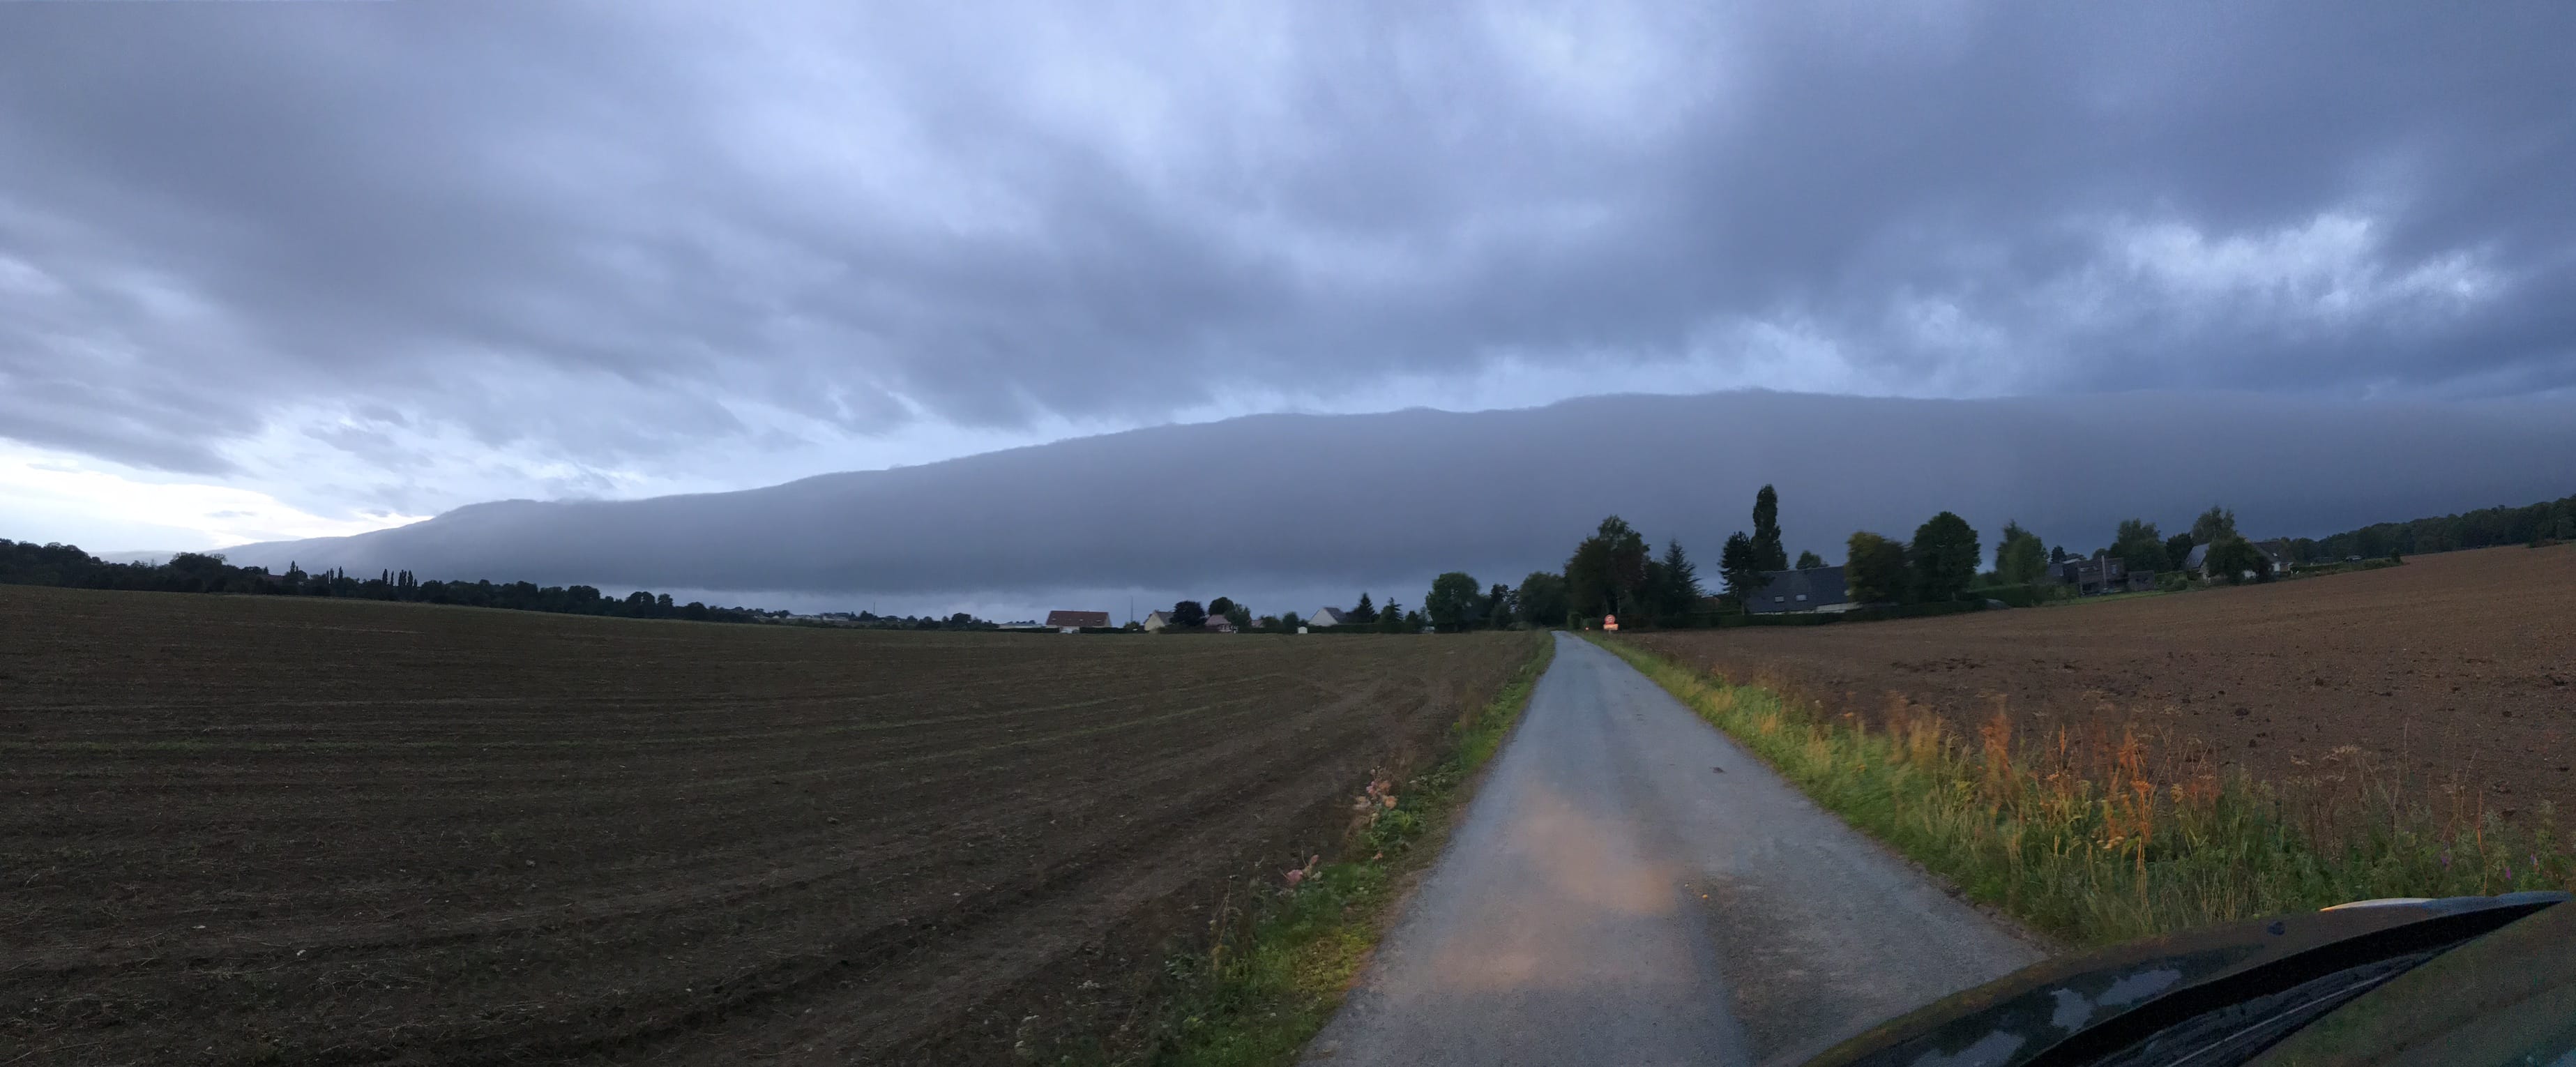 Nuit d’orage en Normandie
En rentrant du travail de nuit, au petit matin en campagne - 29/08/2018 07:35 - Quentin Thibaut